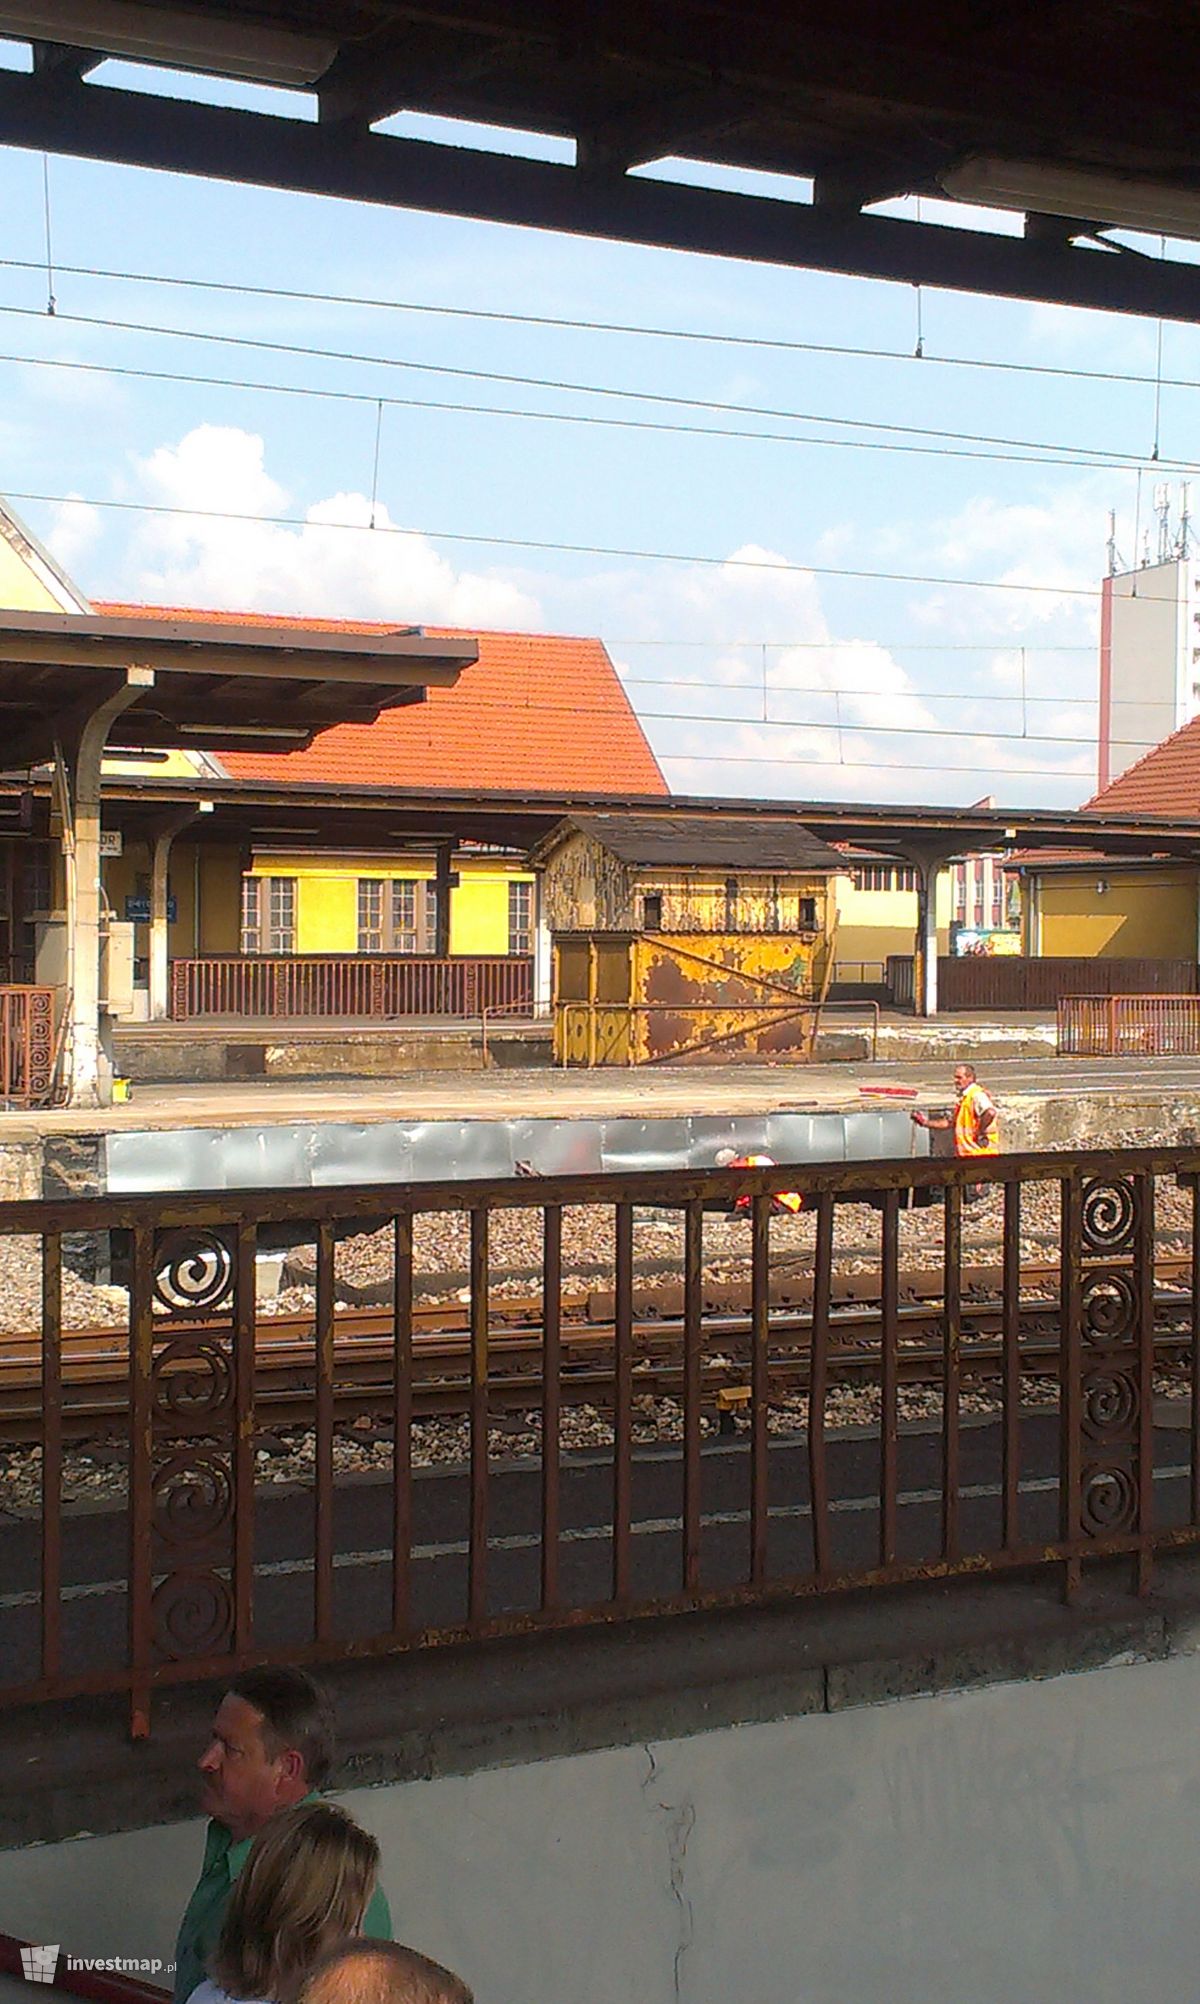 Zdjęcie [Kędzierzyn-Koźle] Dworzec "Kędzierzyn-Koźle Główny" (remont) fot. Merduk 